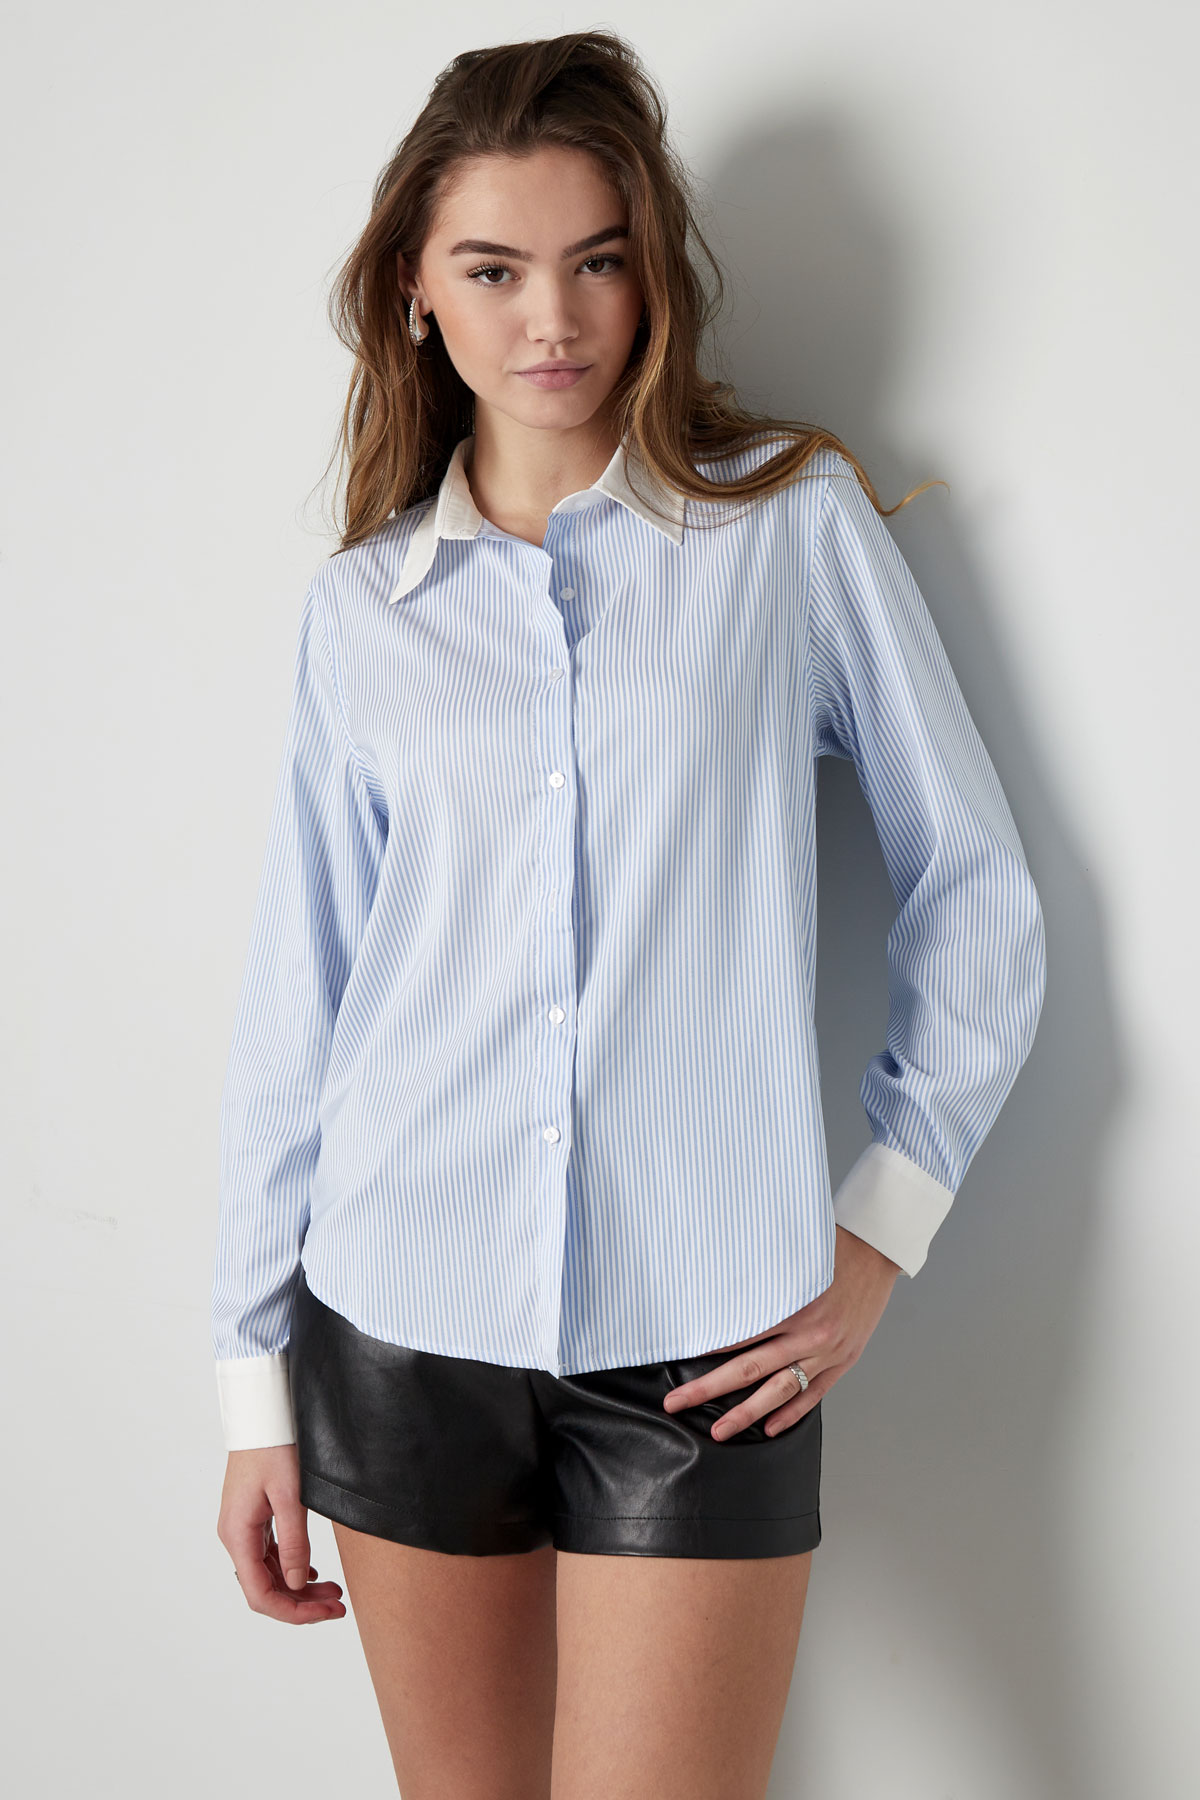 Temel bluz şeritleri - beyaz/pembe h5 Resim2